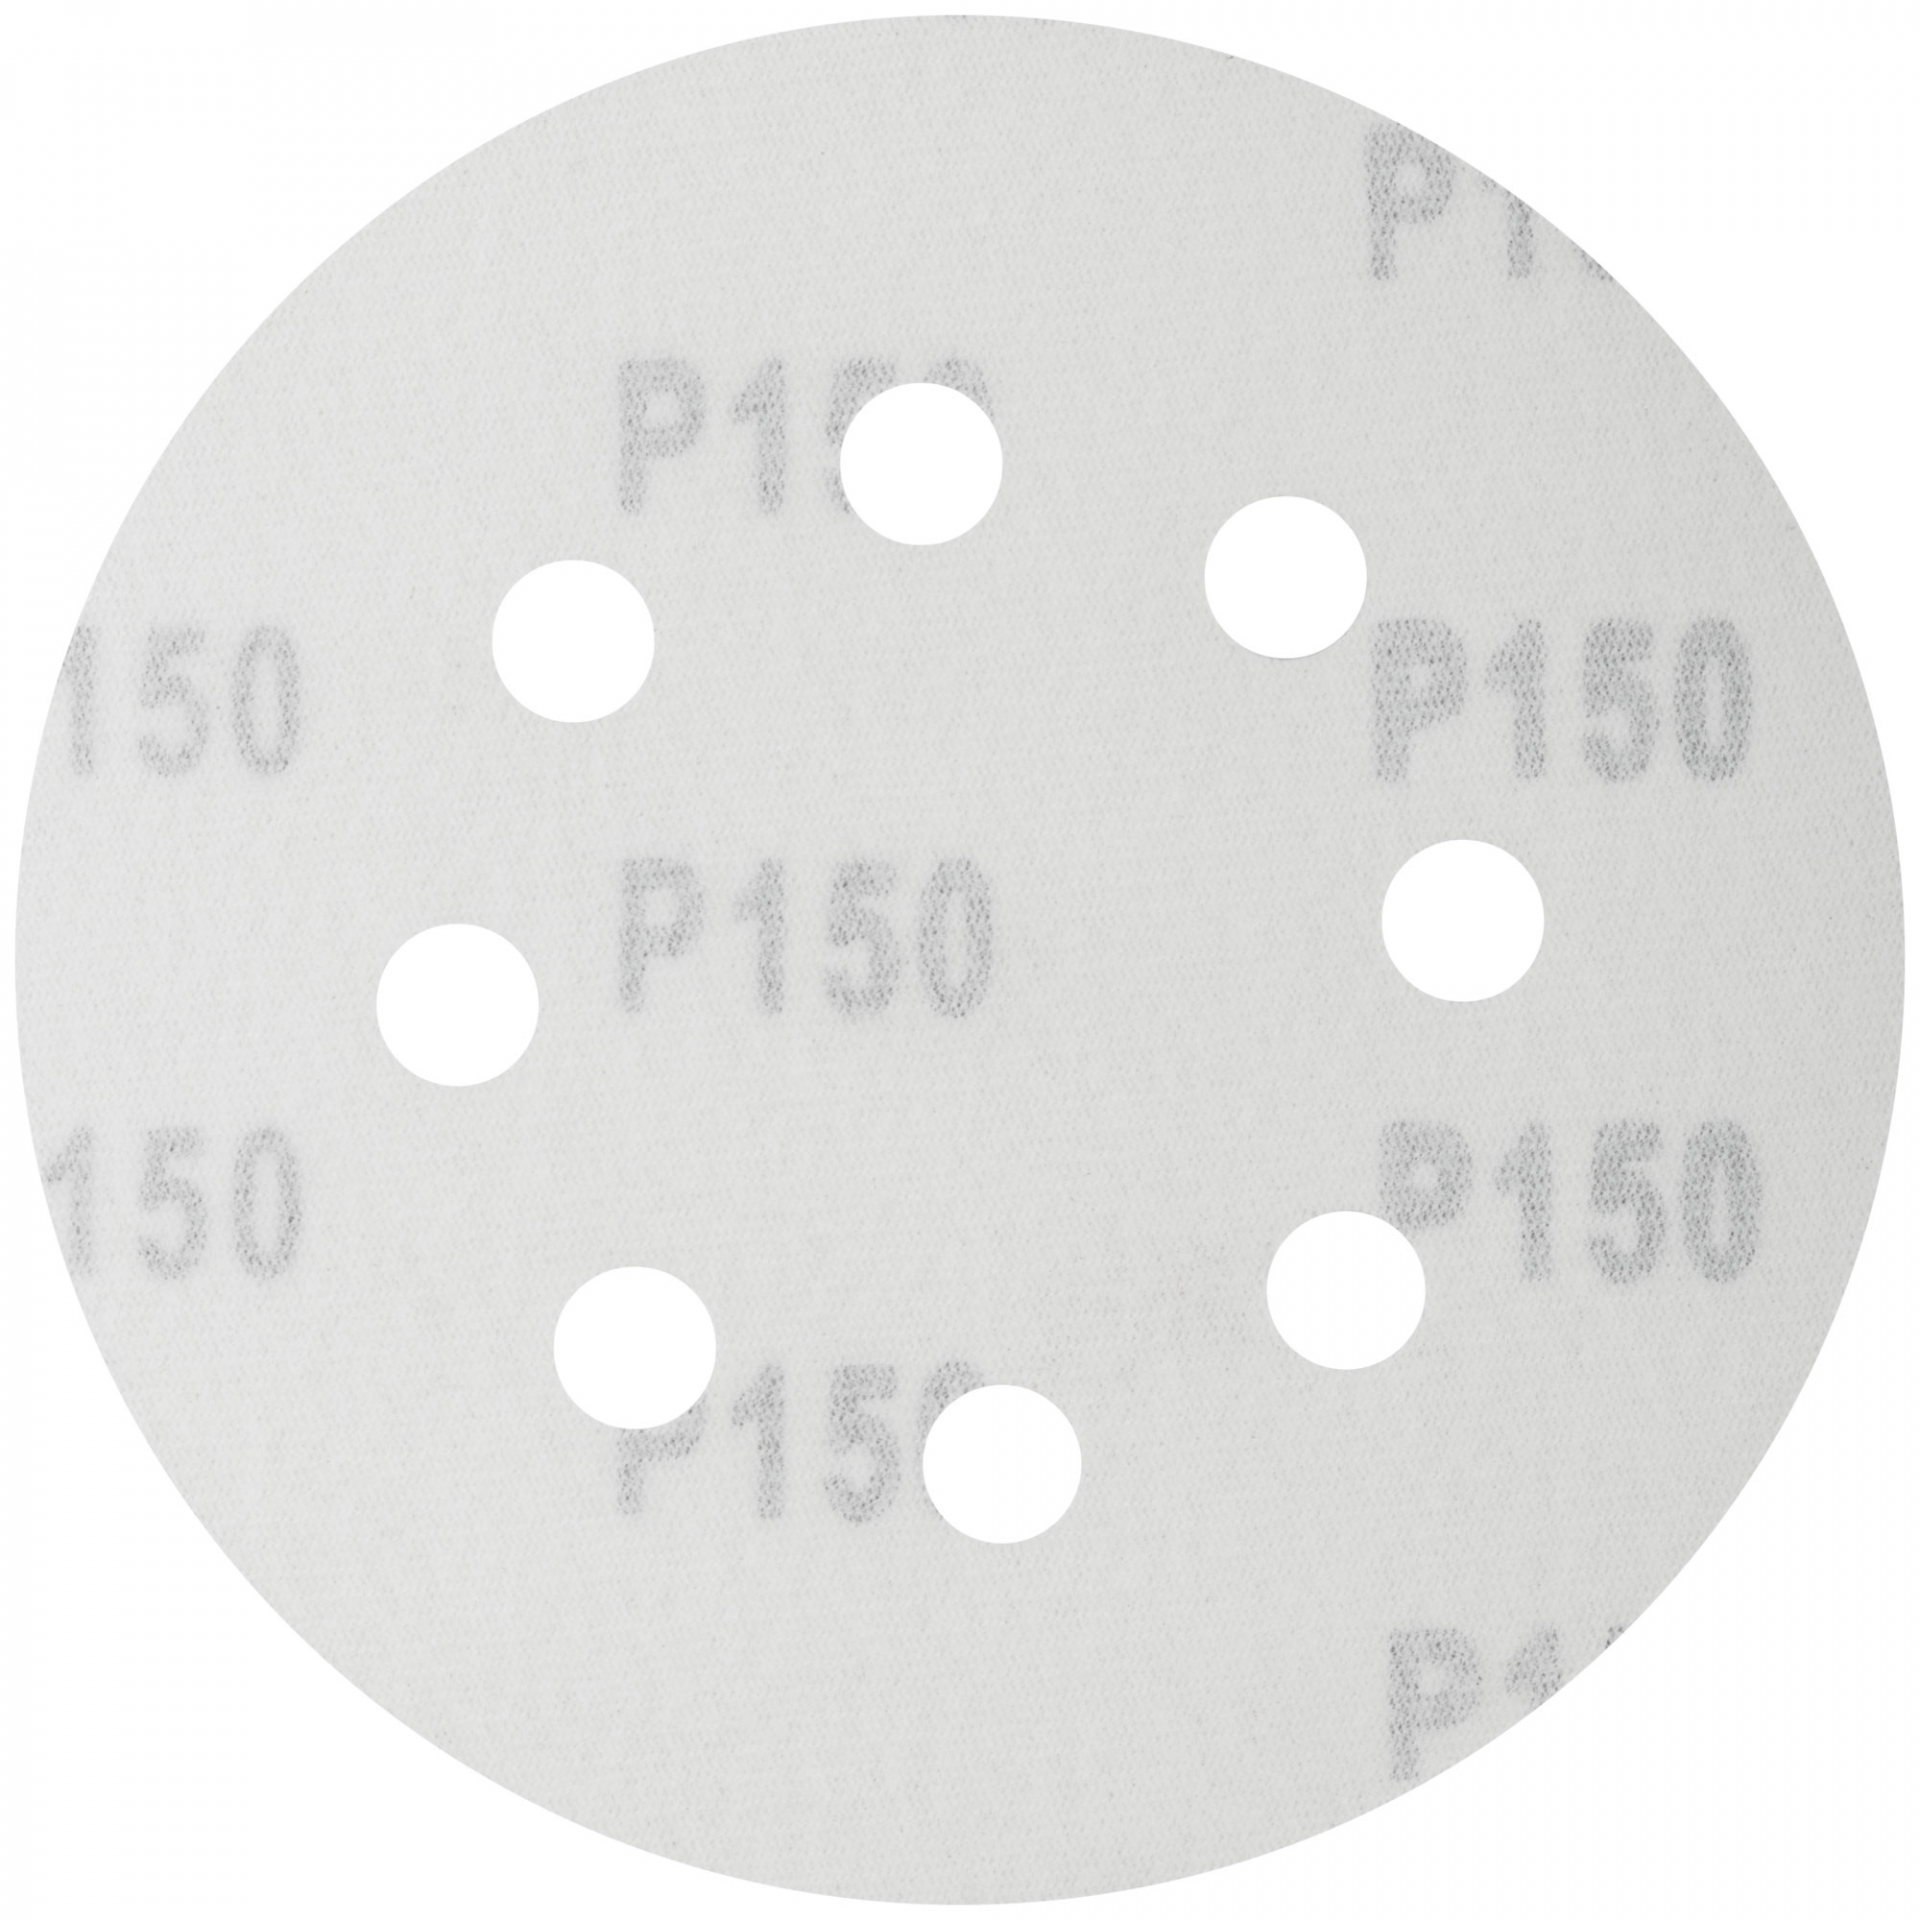 Круги шлифовальные с отверстиями (липучка), алюминий-оксидные, 125 мм, 5 шт. Р 150